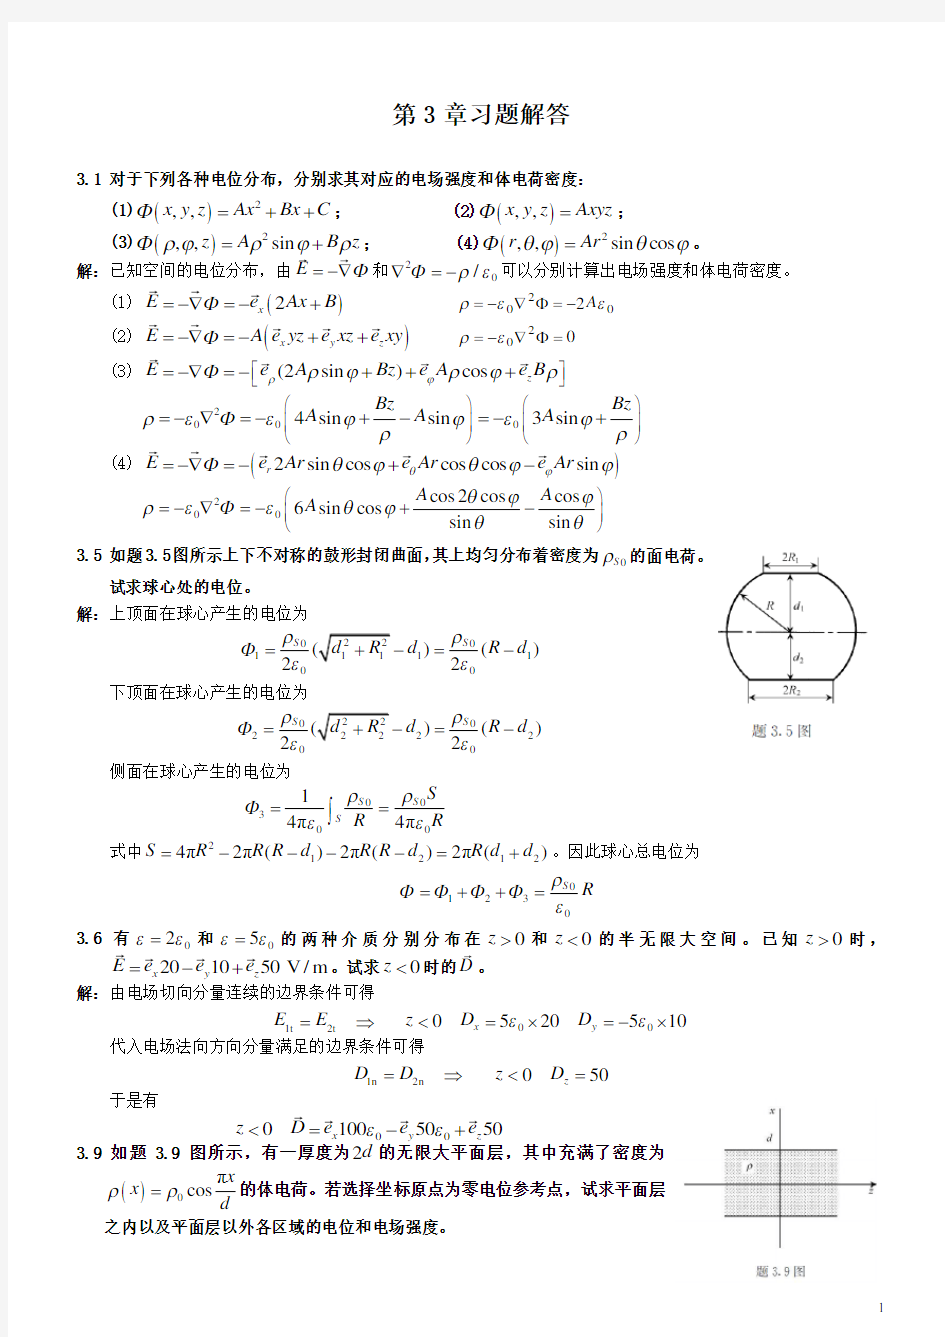 电磁场与电磁波理论(第二版)(徐立勤,曹伟)第3章习题解答